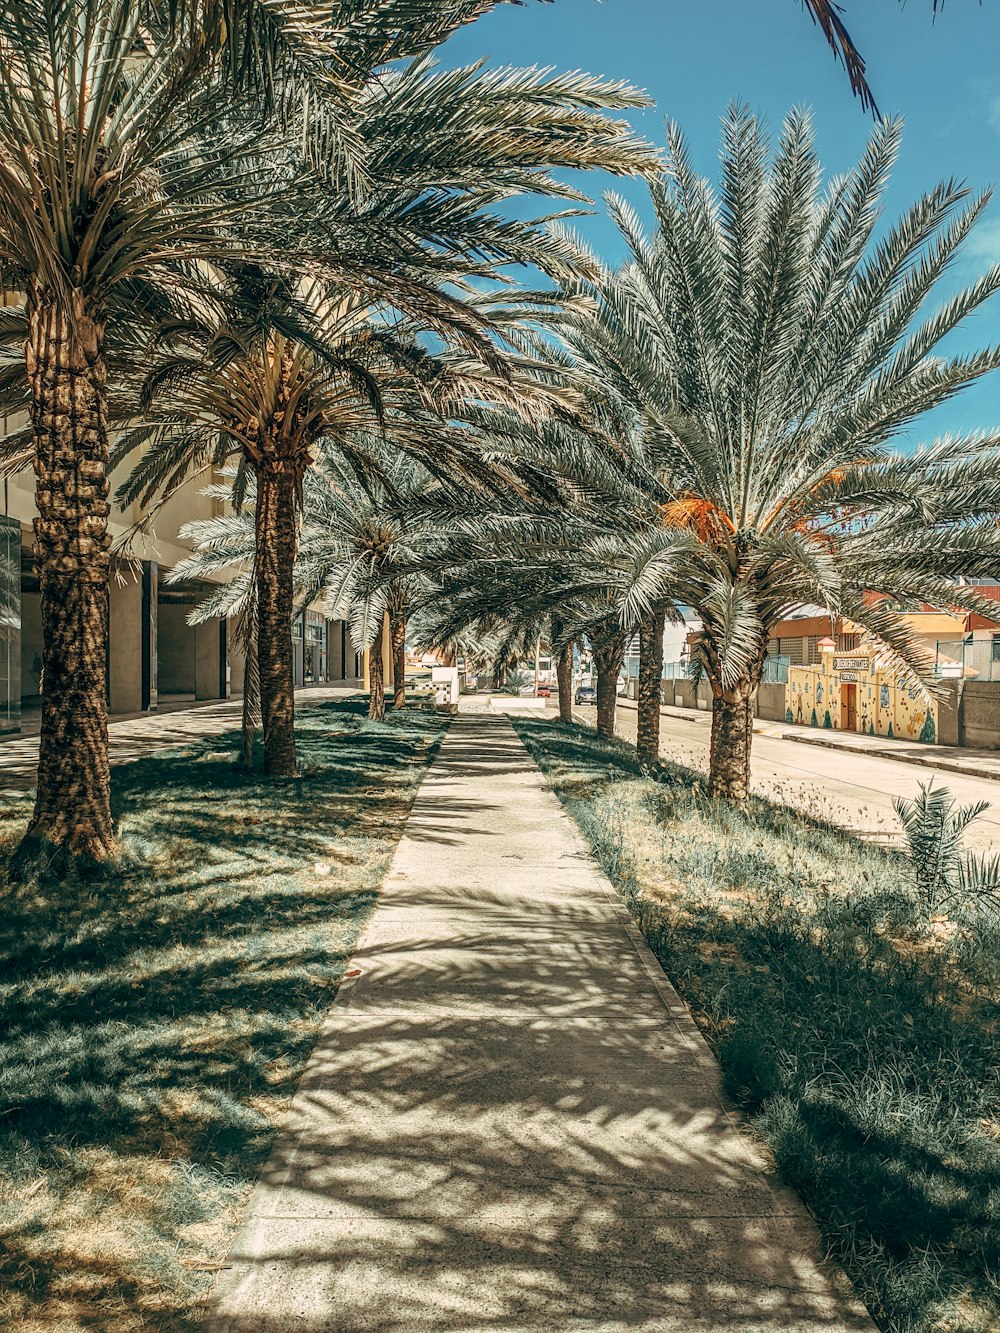 Una acera bordeada de palmeras en un día soleado